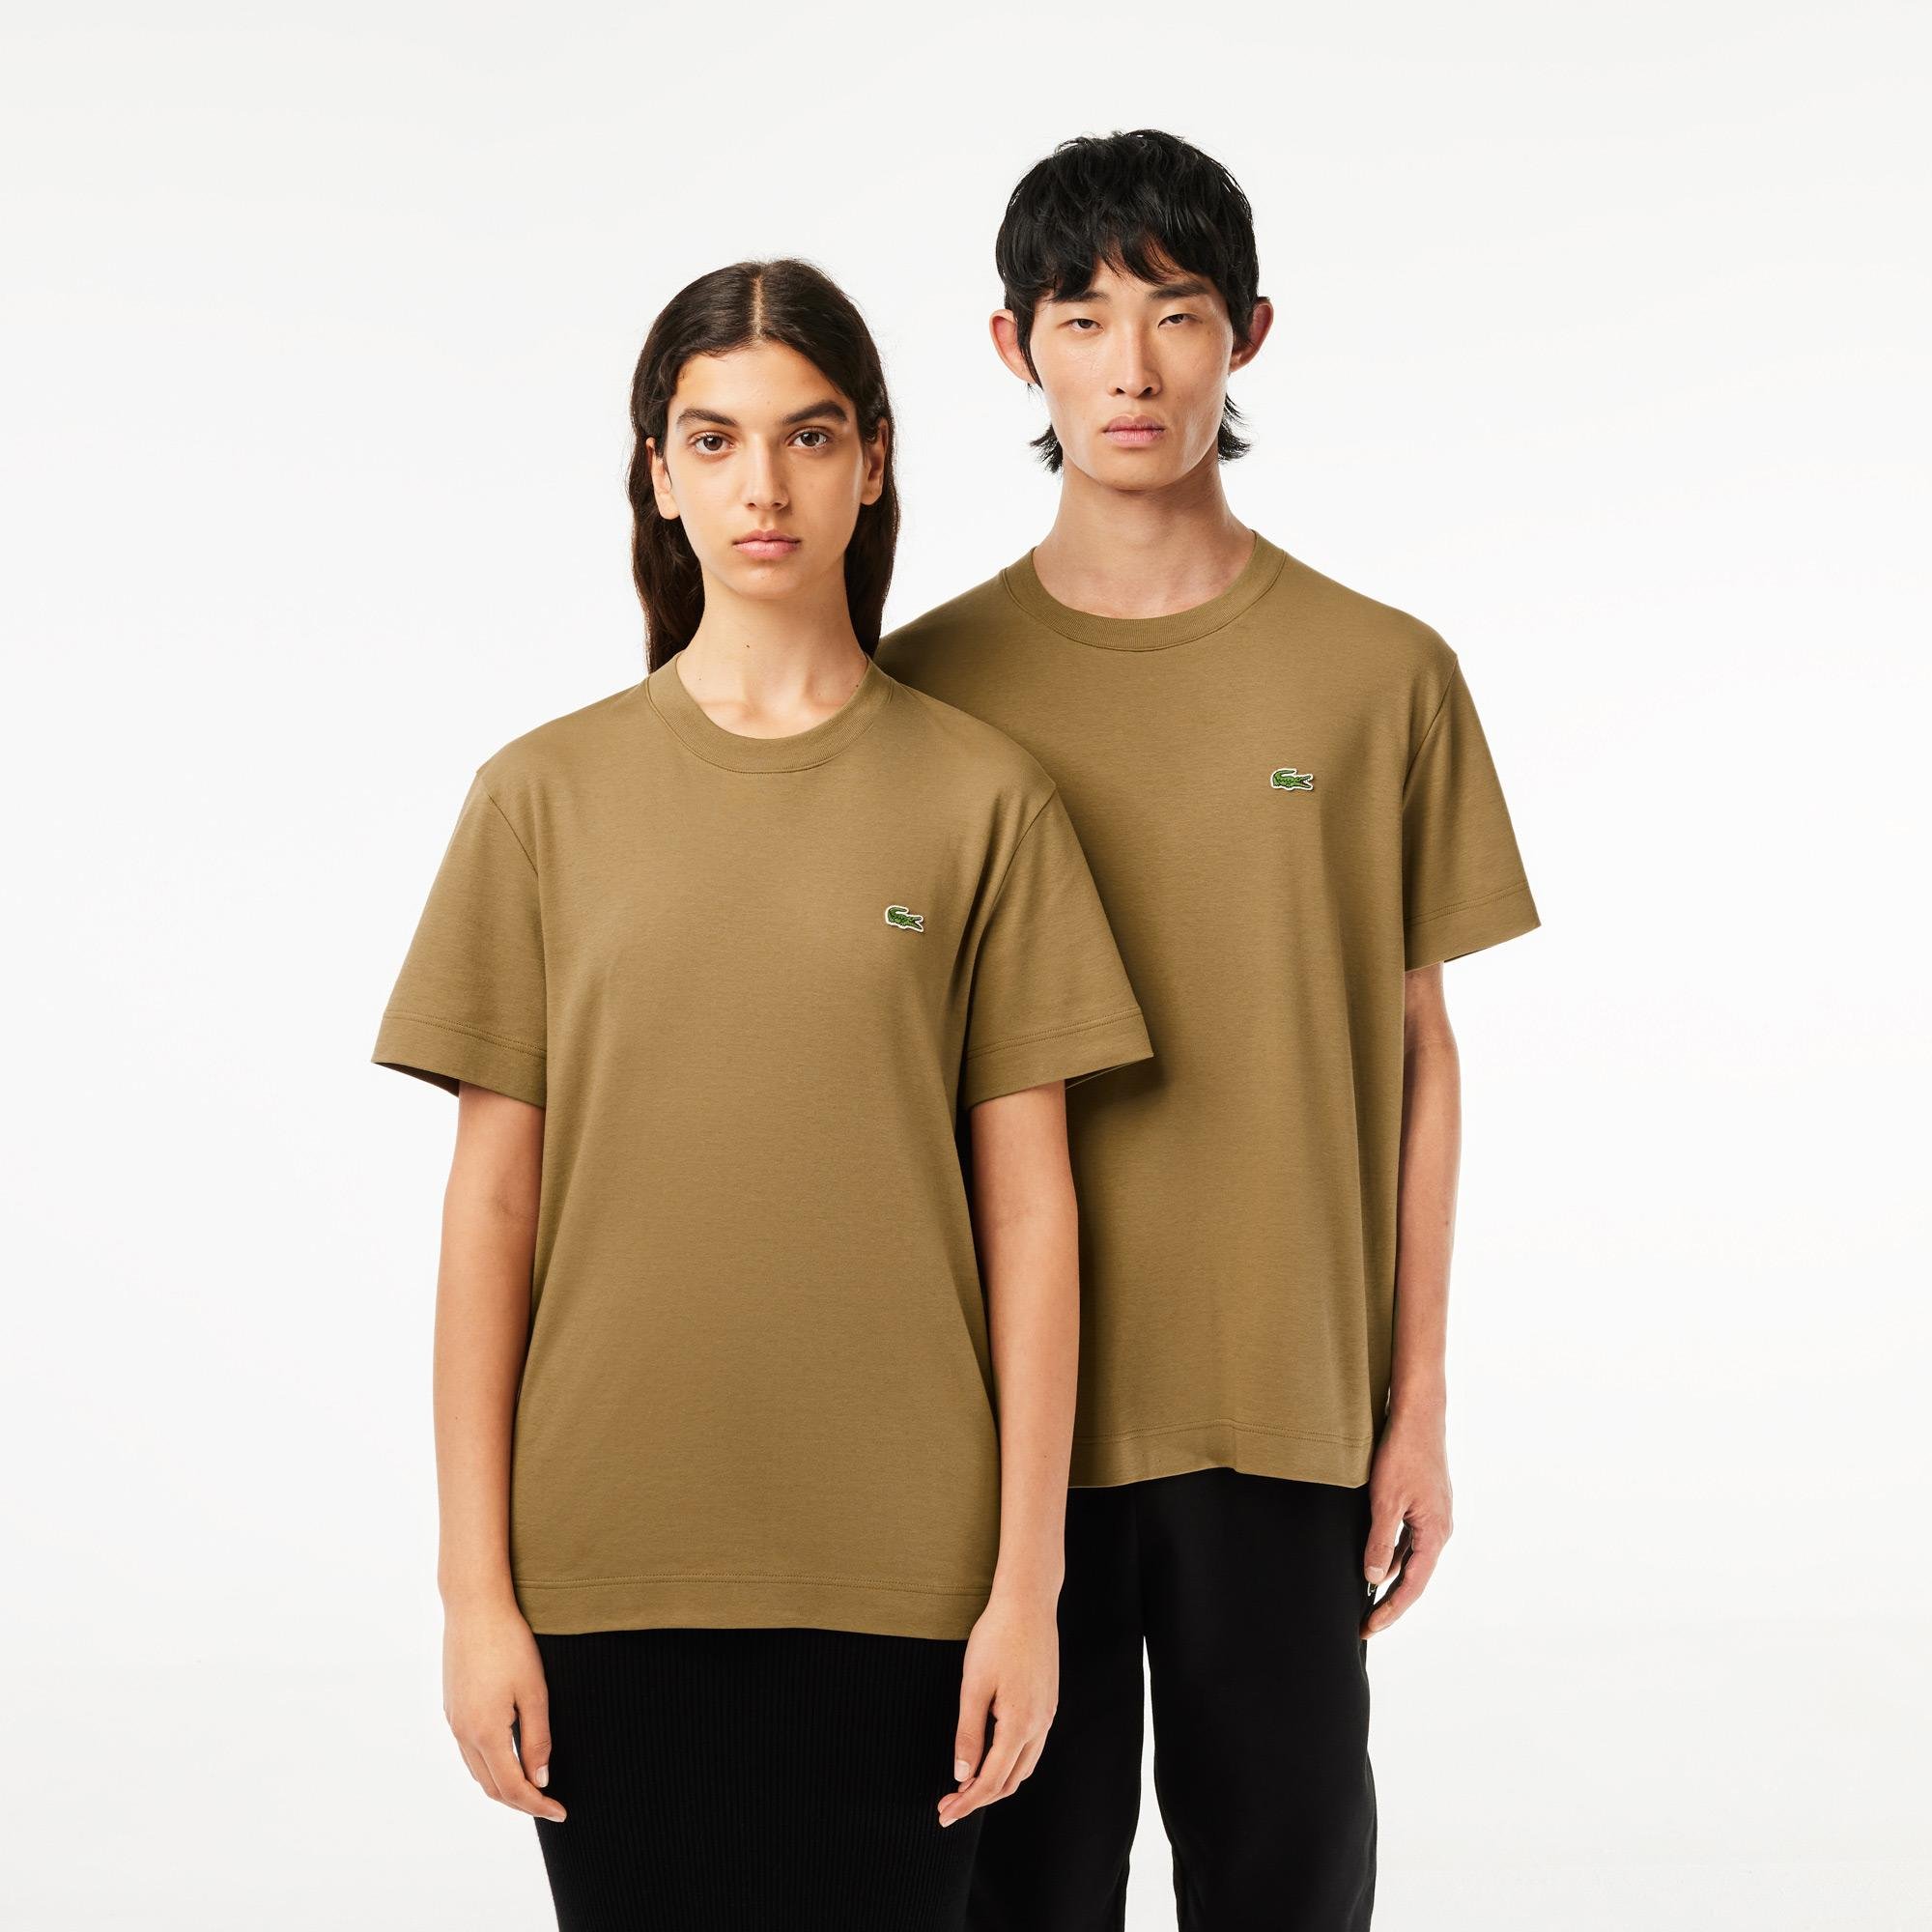 Lacoste Unisex tričko z organickej bavlny s okrúhlym výstrihom